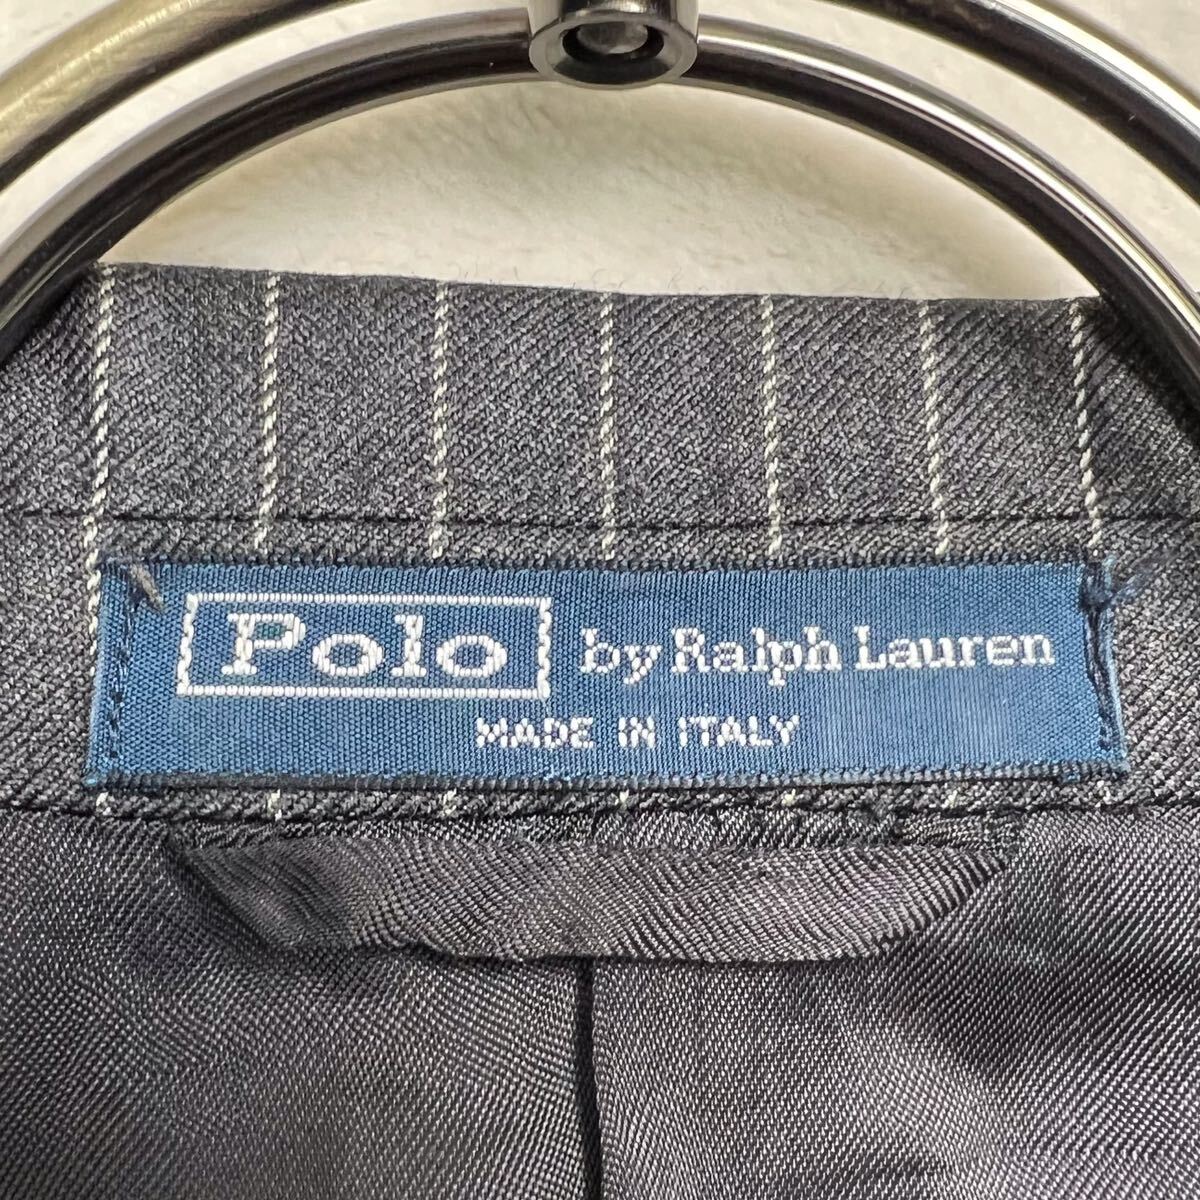 ポロ ラルフローレン（Polo Ralph Lauren) ペンストライプ ジャケット サイズ36 メンズSサイ相当 チャコールグレー 2つボタン サイドベンツ_画像3